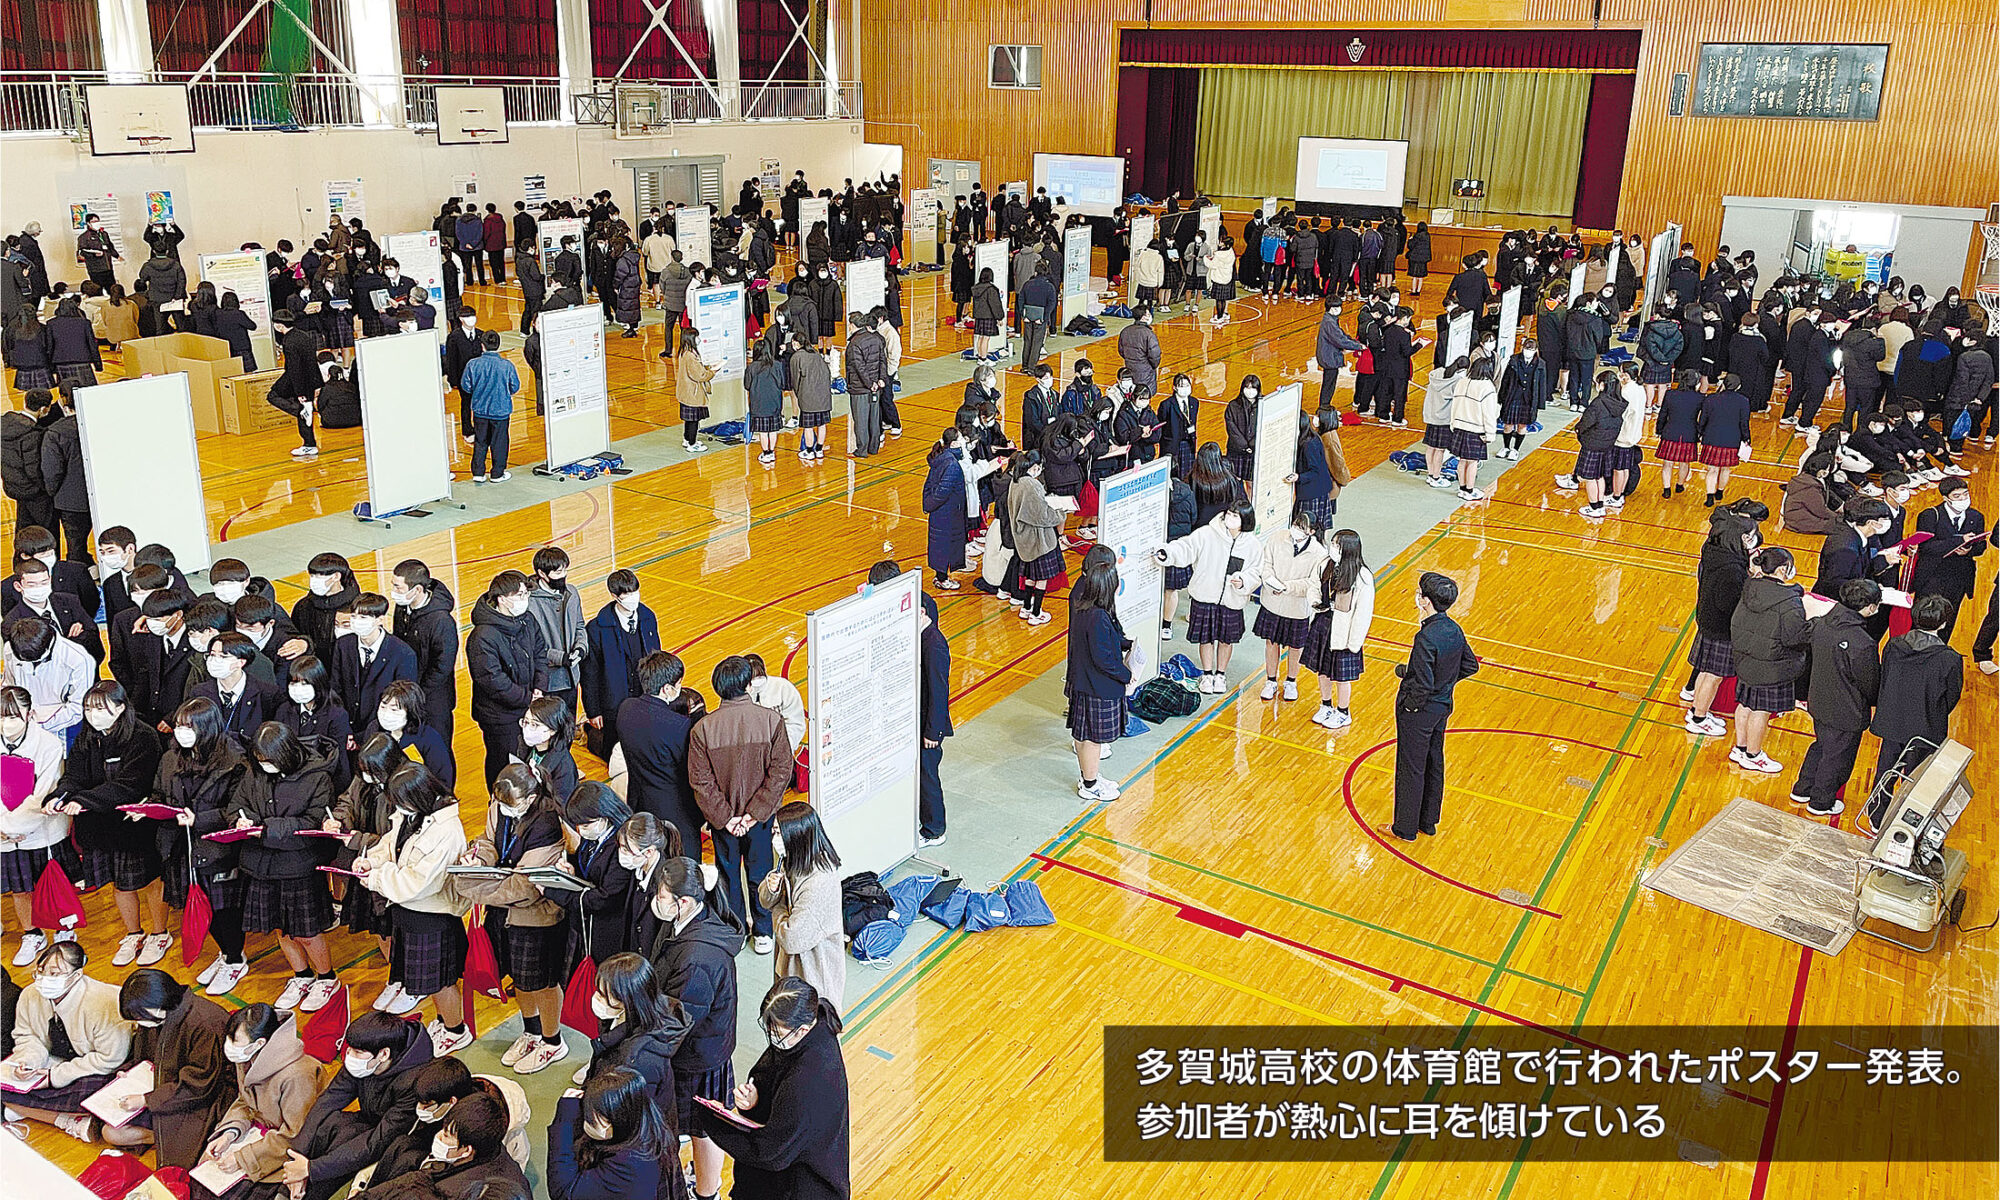 多賀城高校の体育館で行われたポスター発表。参加者が熱心に耳を傾けている